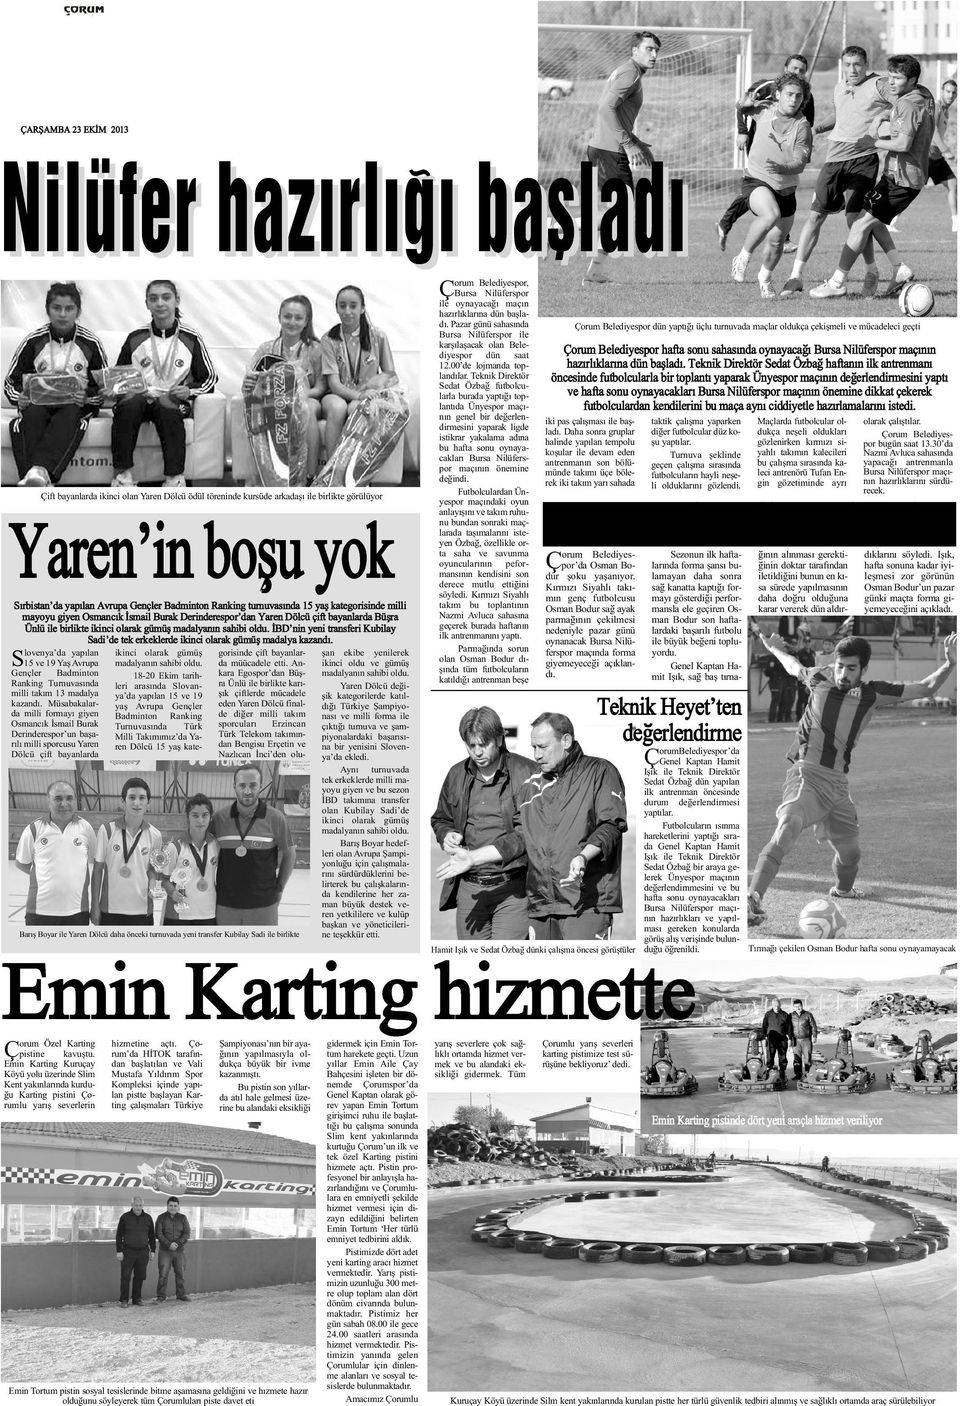 S lovenya da yapýlan 15 ve 19 Yaþ Avrupa Gençler Badminton Ranking Turnuvasýnda milli takým 13 madalya kazandý.